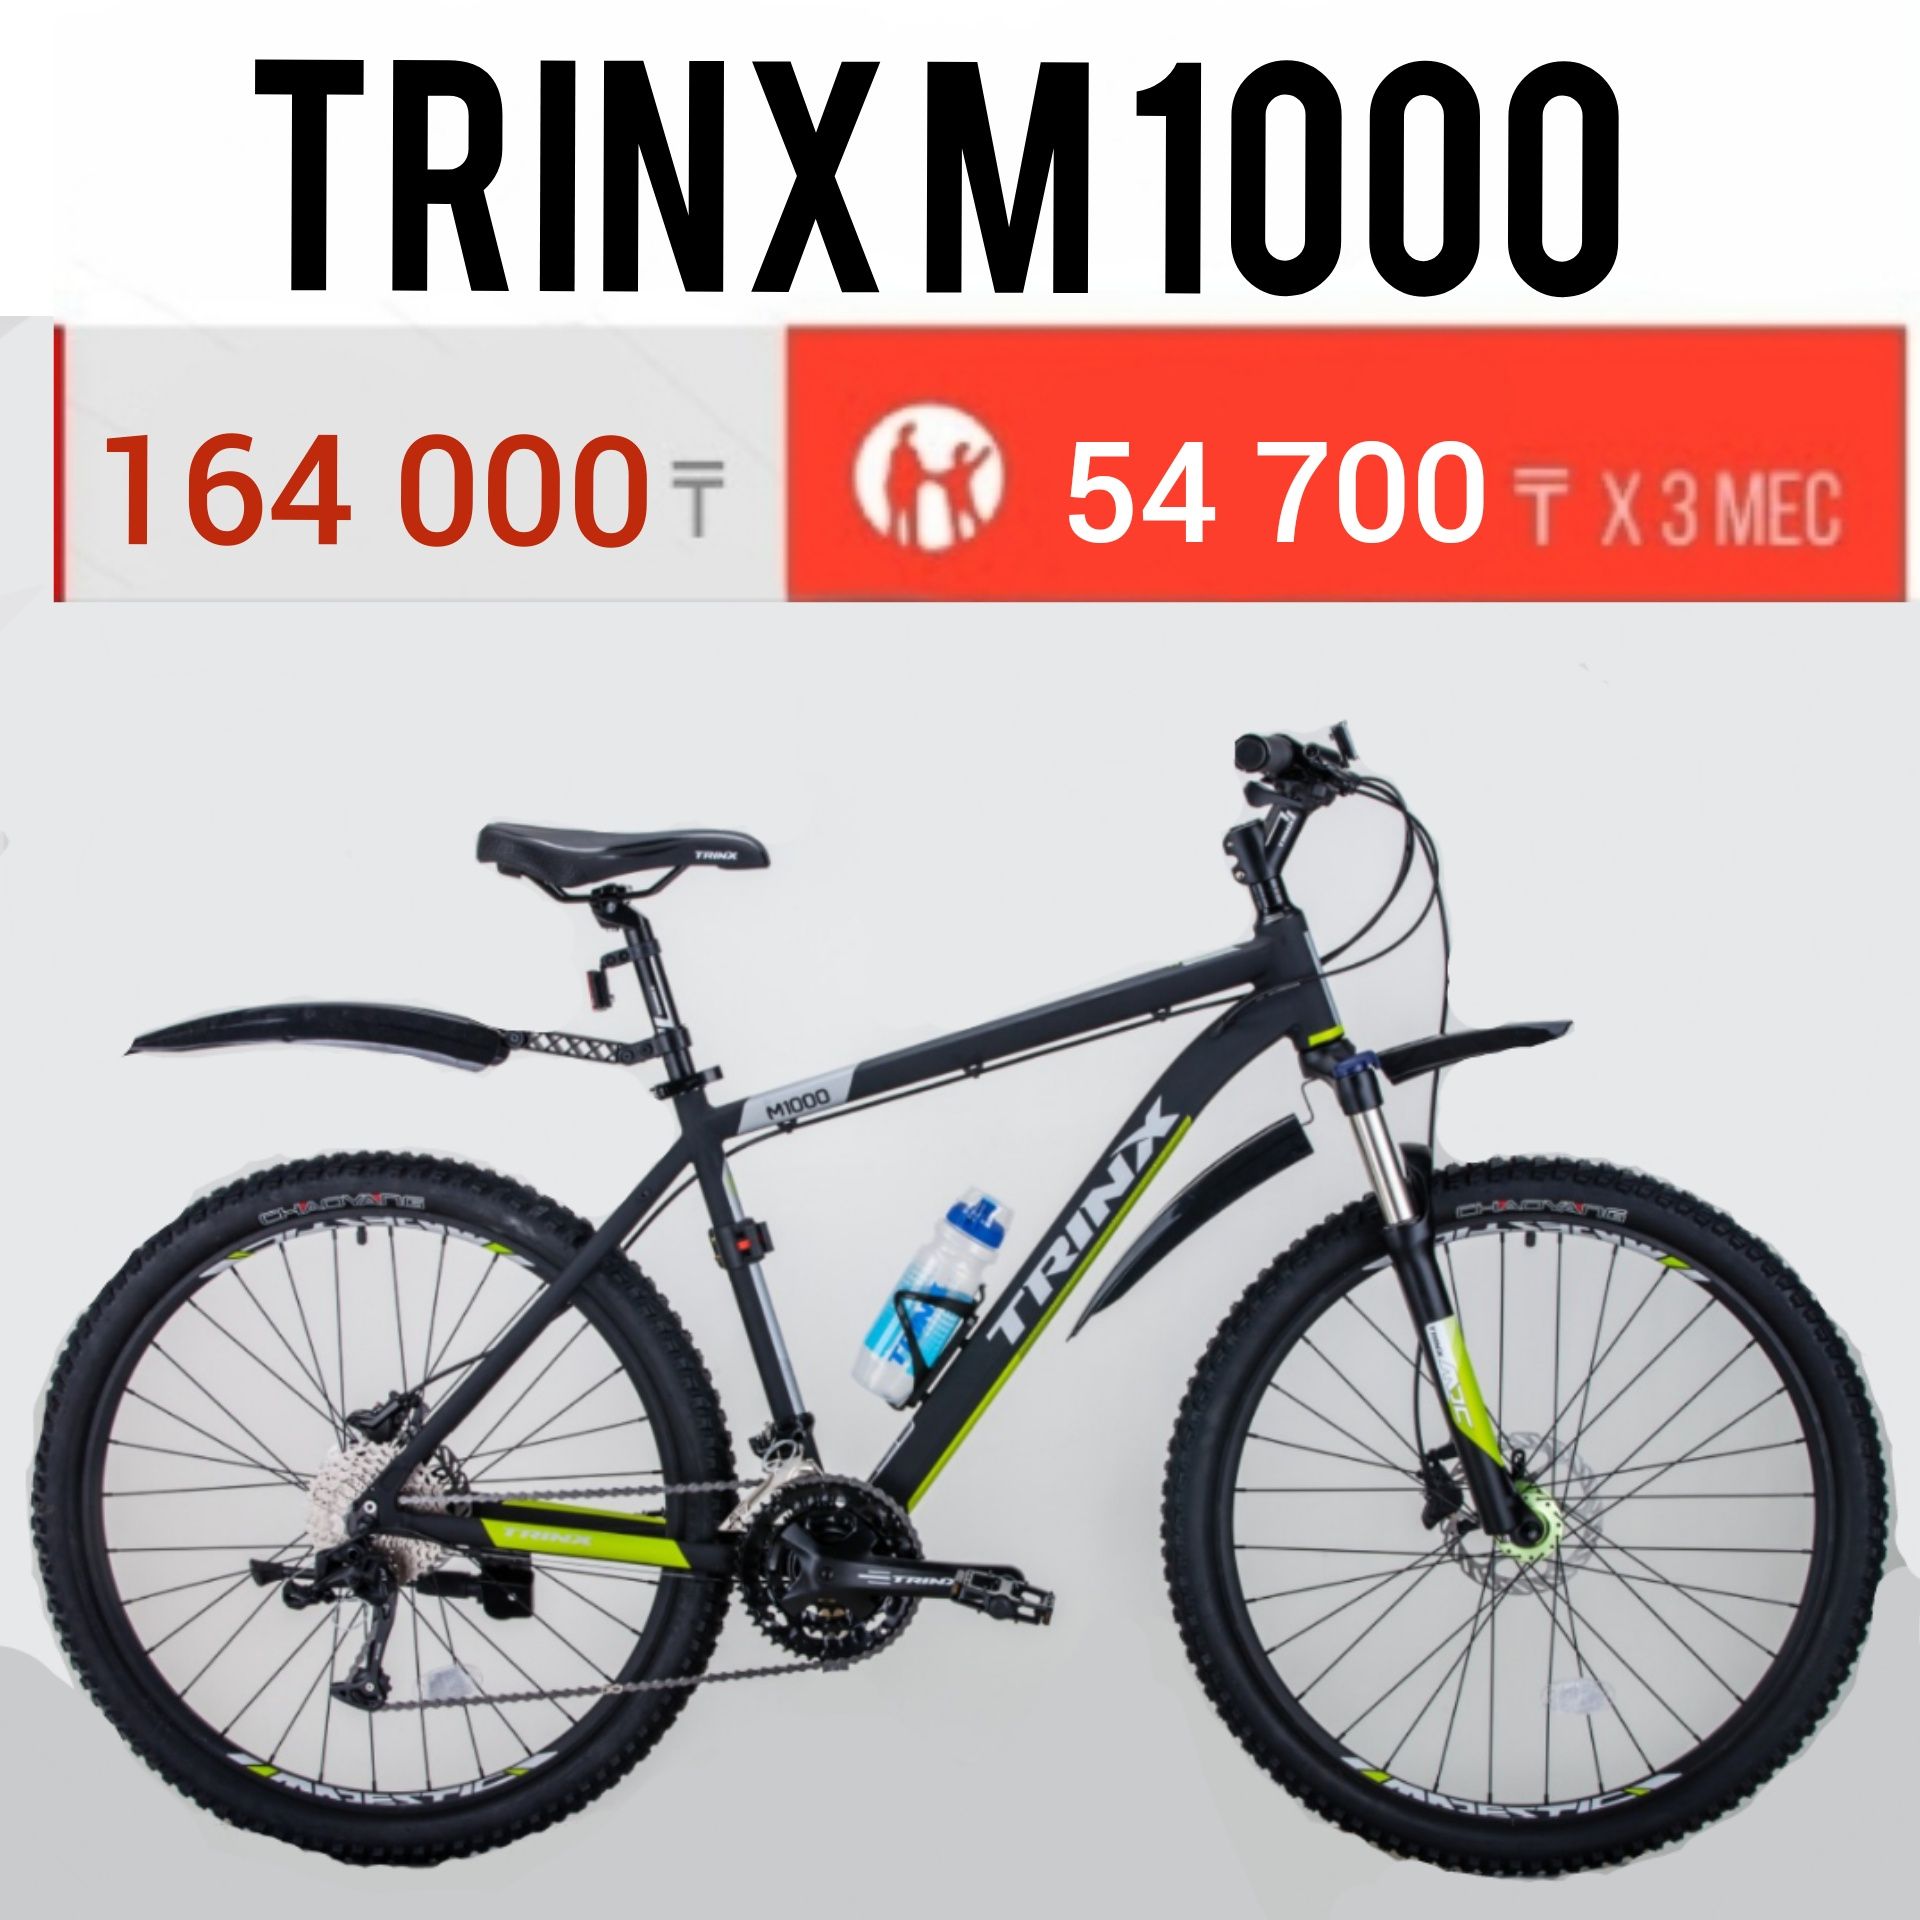 Велосипед Trinx m1000 Elite. 16,19,21 рама. 26, 27.5, 29 колеса.